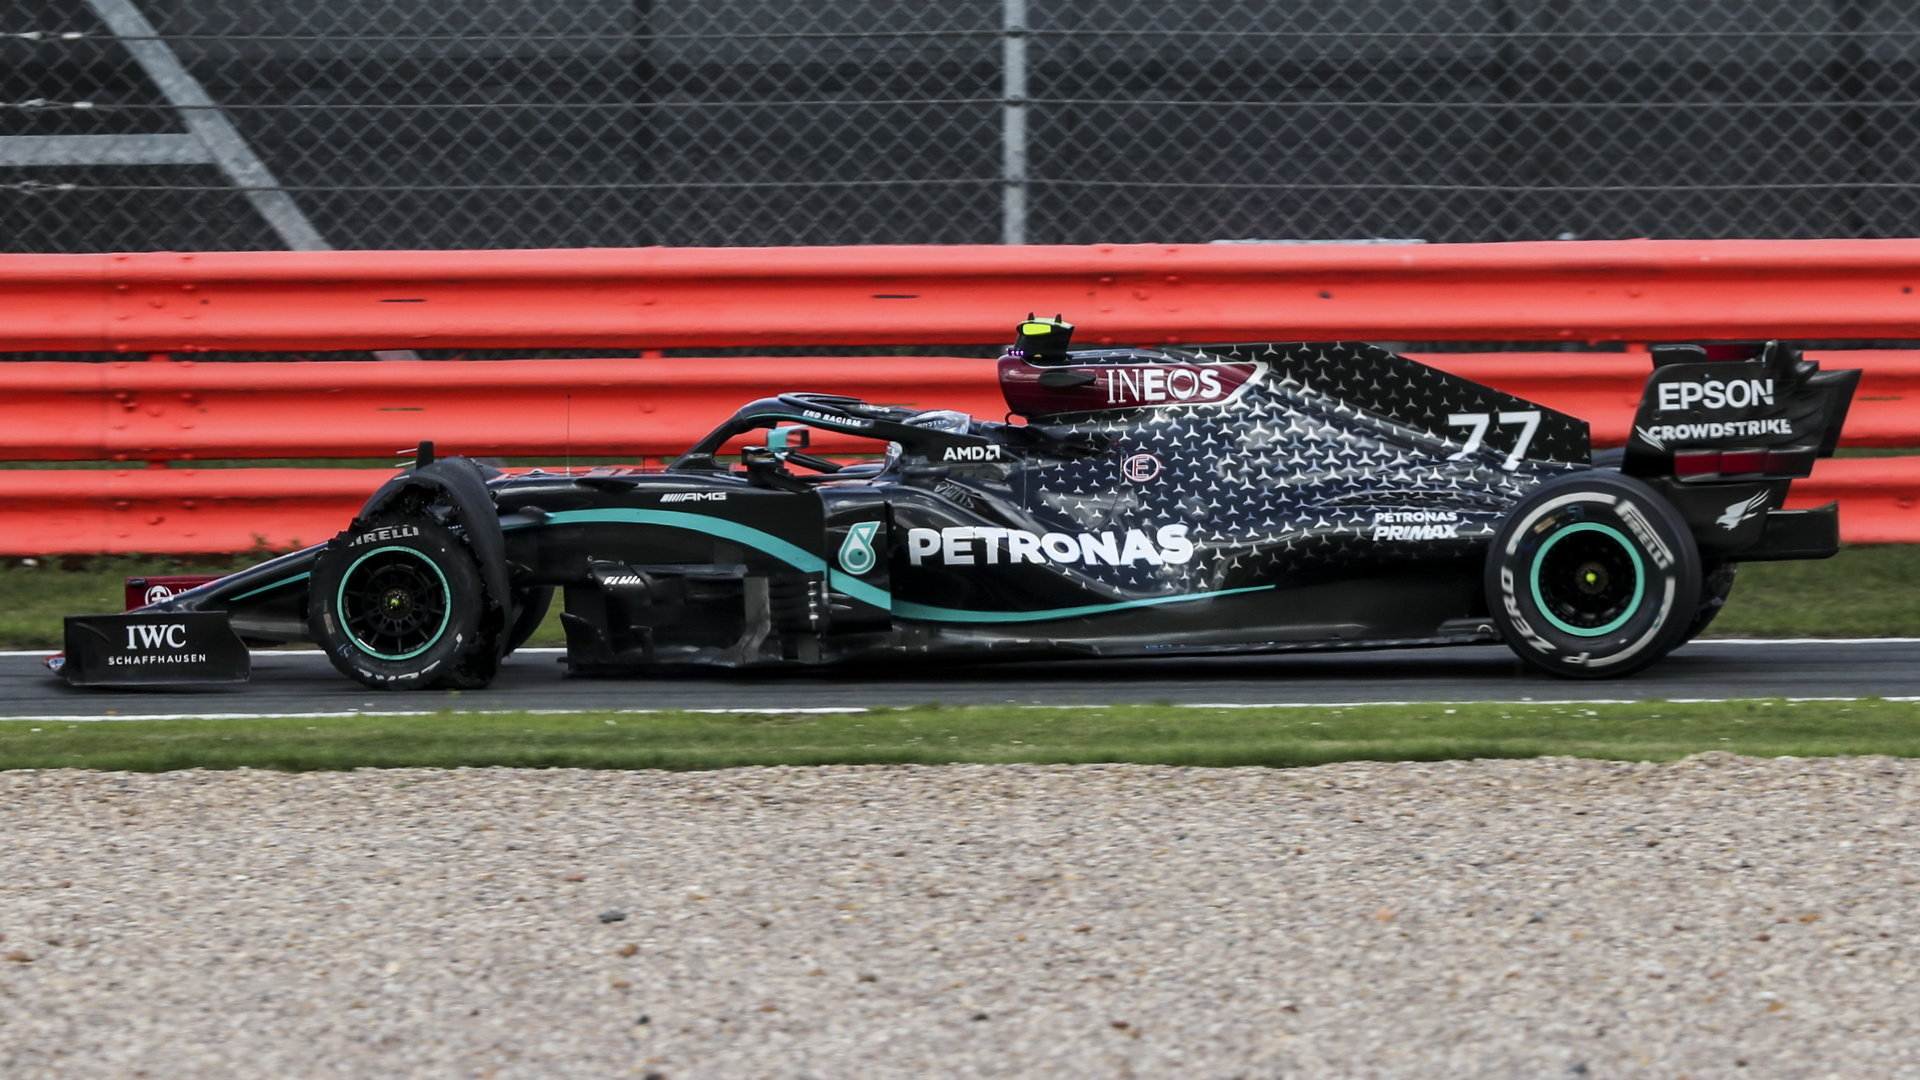 Valtteri Bottas 3 kola před koncem s prasklou přední pneumatikou v závodě v Silverstone